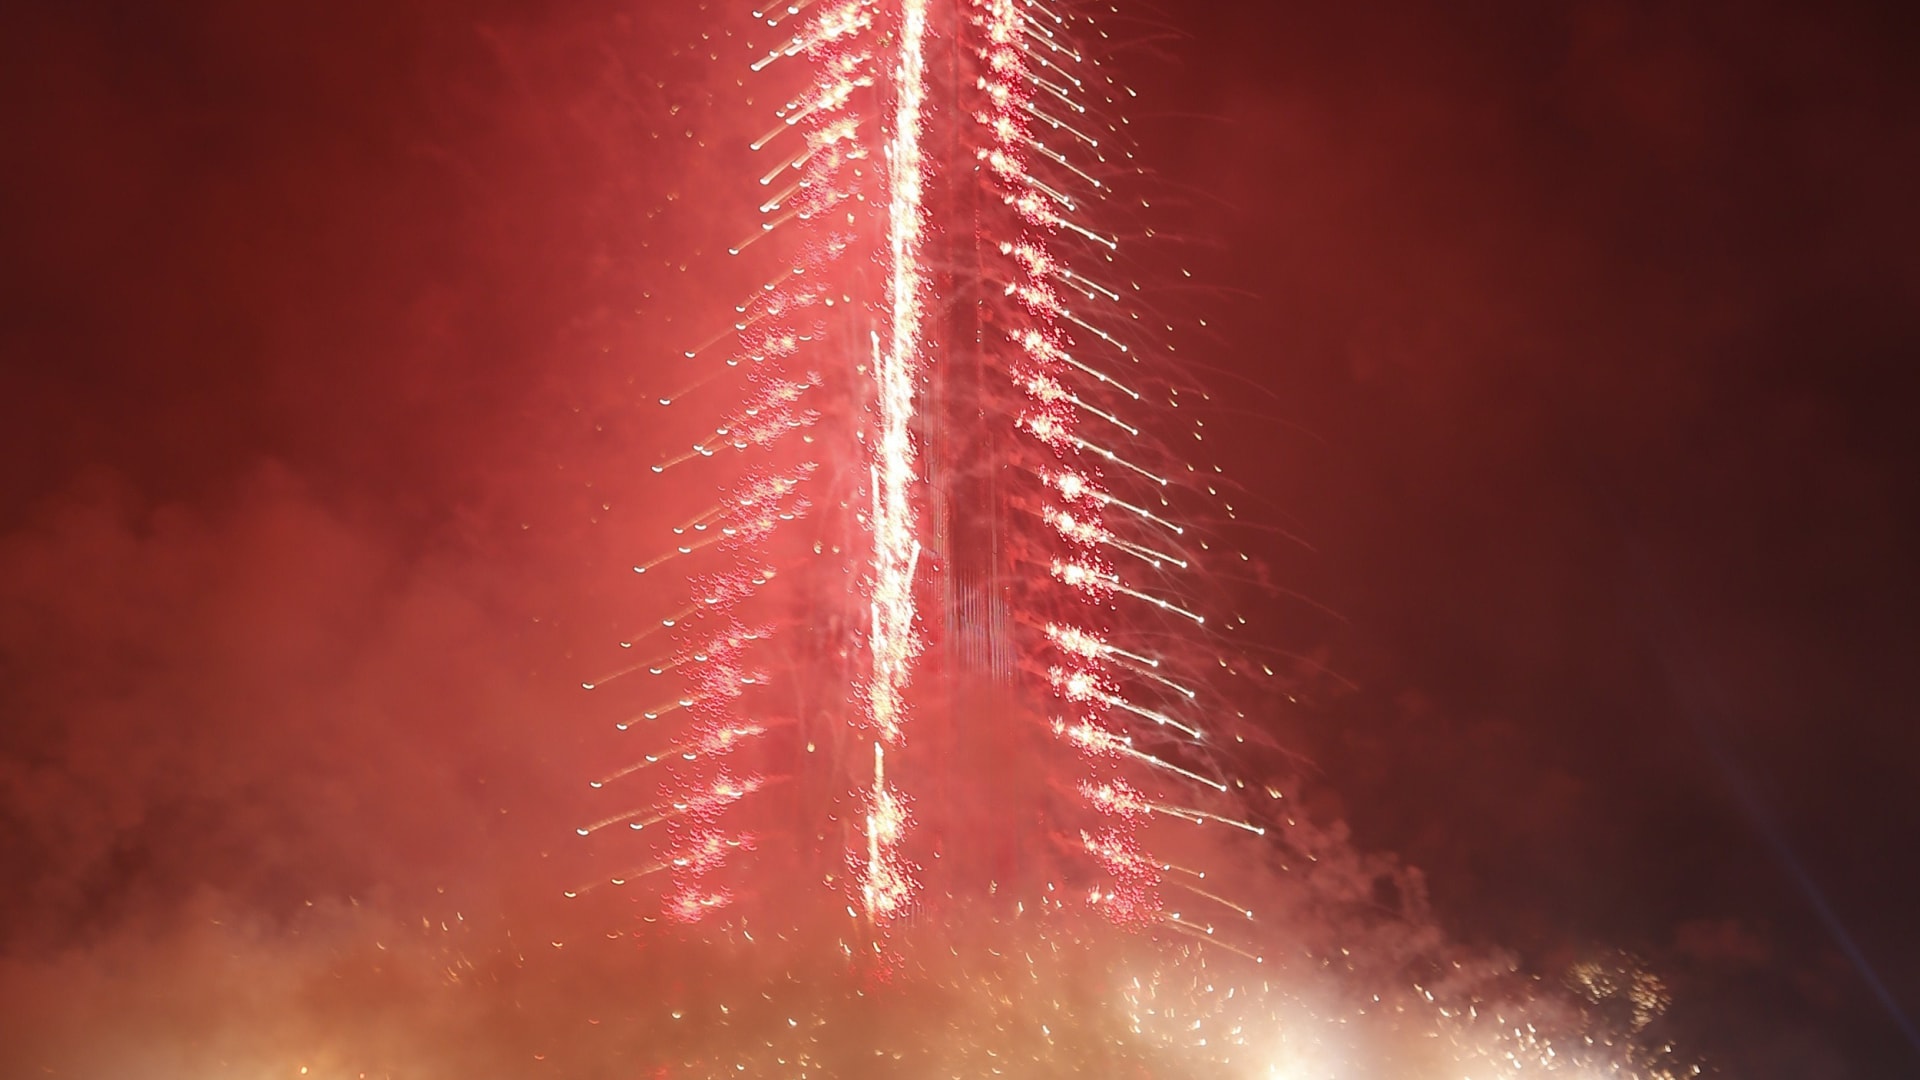 دخلت إمارة دبي موسوعة غينيس للأرقام القياسية مرة أخرى بسبب حجم الاحتفالات المواكبة لحلول السنة الجديدة.